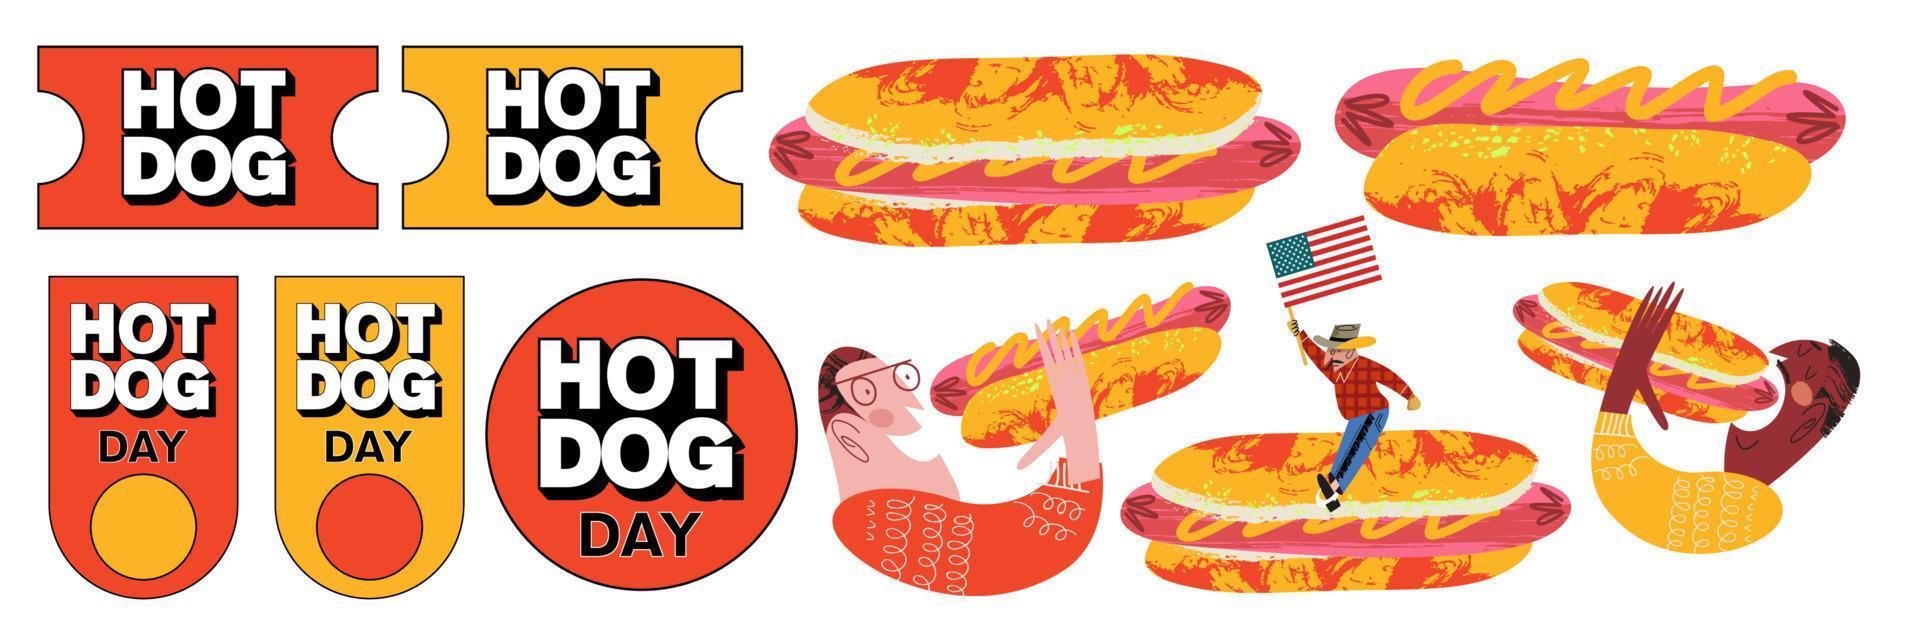 hot dog. Fast food. salsiccia in un panino. illustrazione vettoriale. vettore